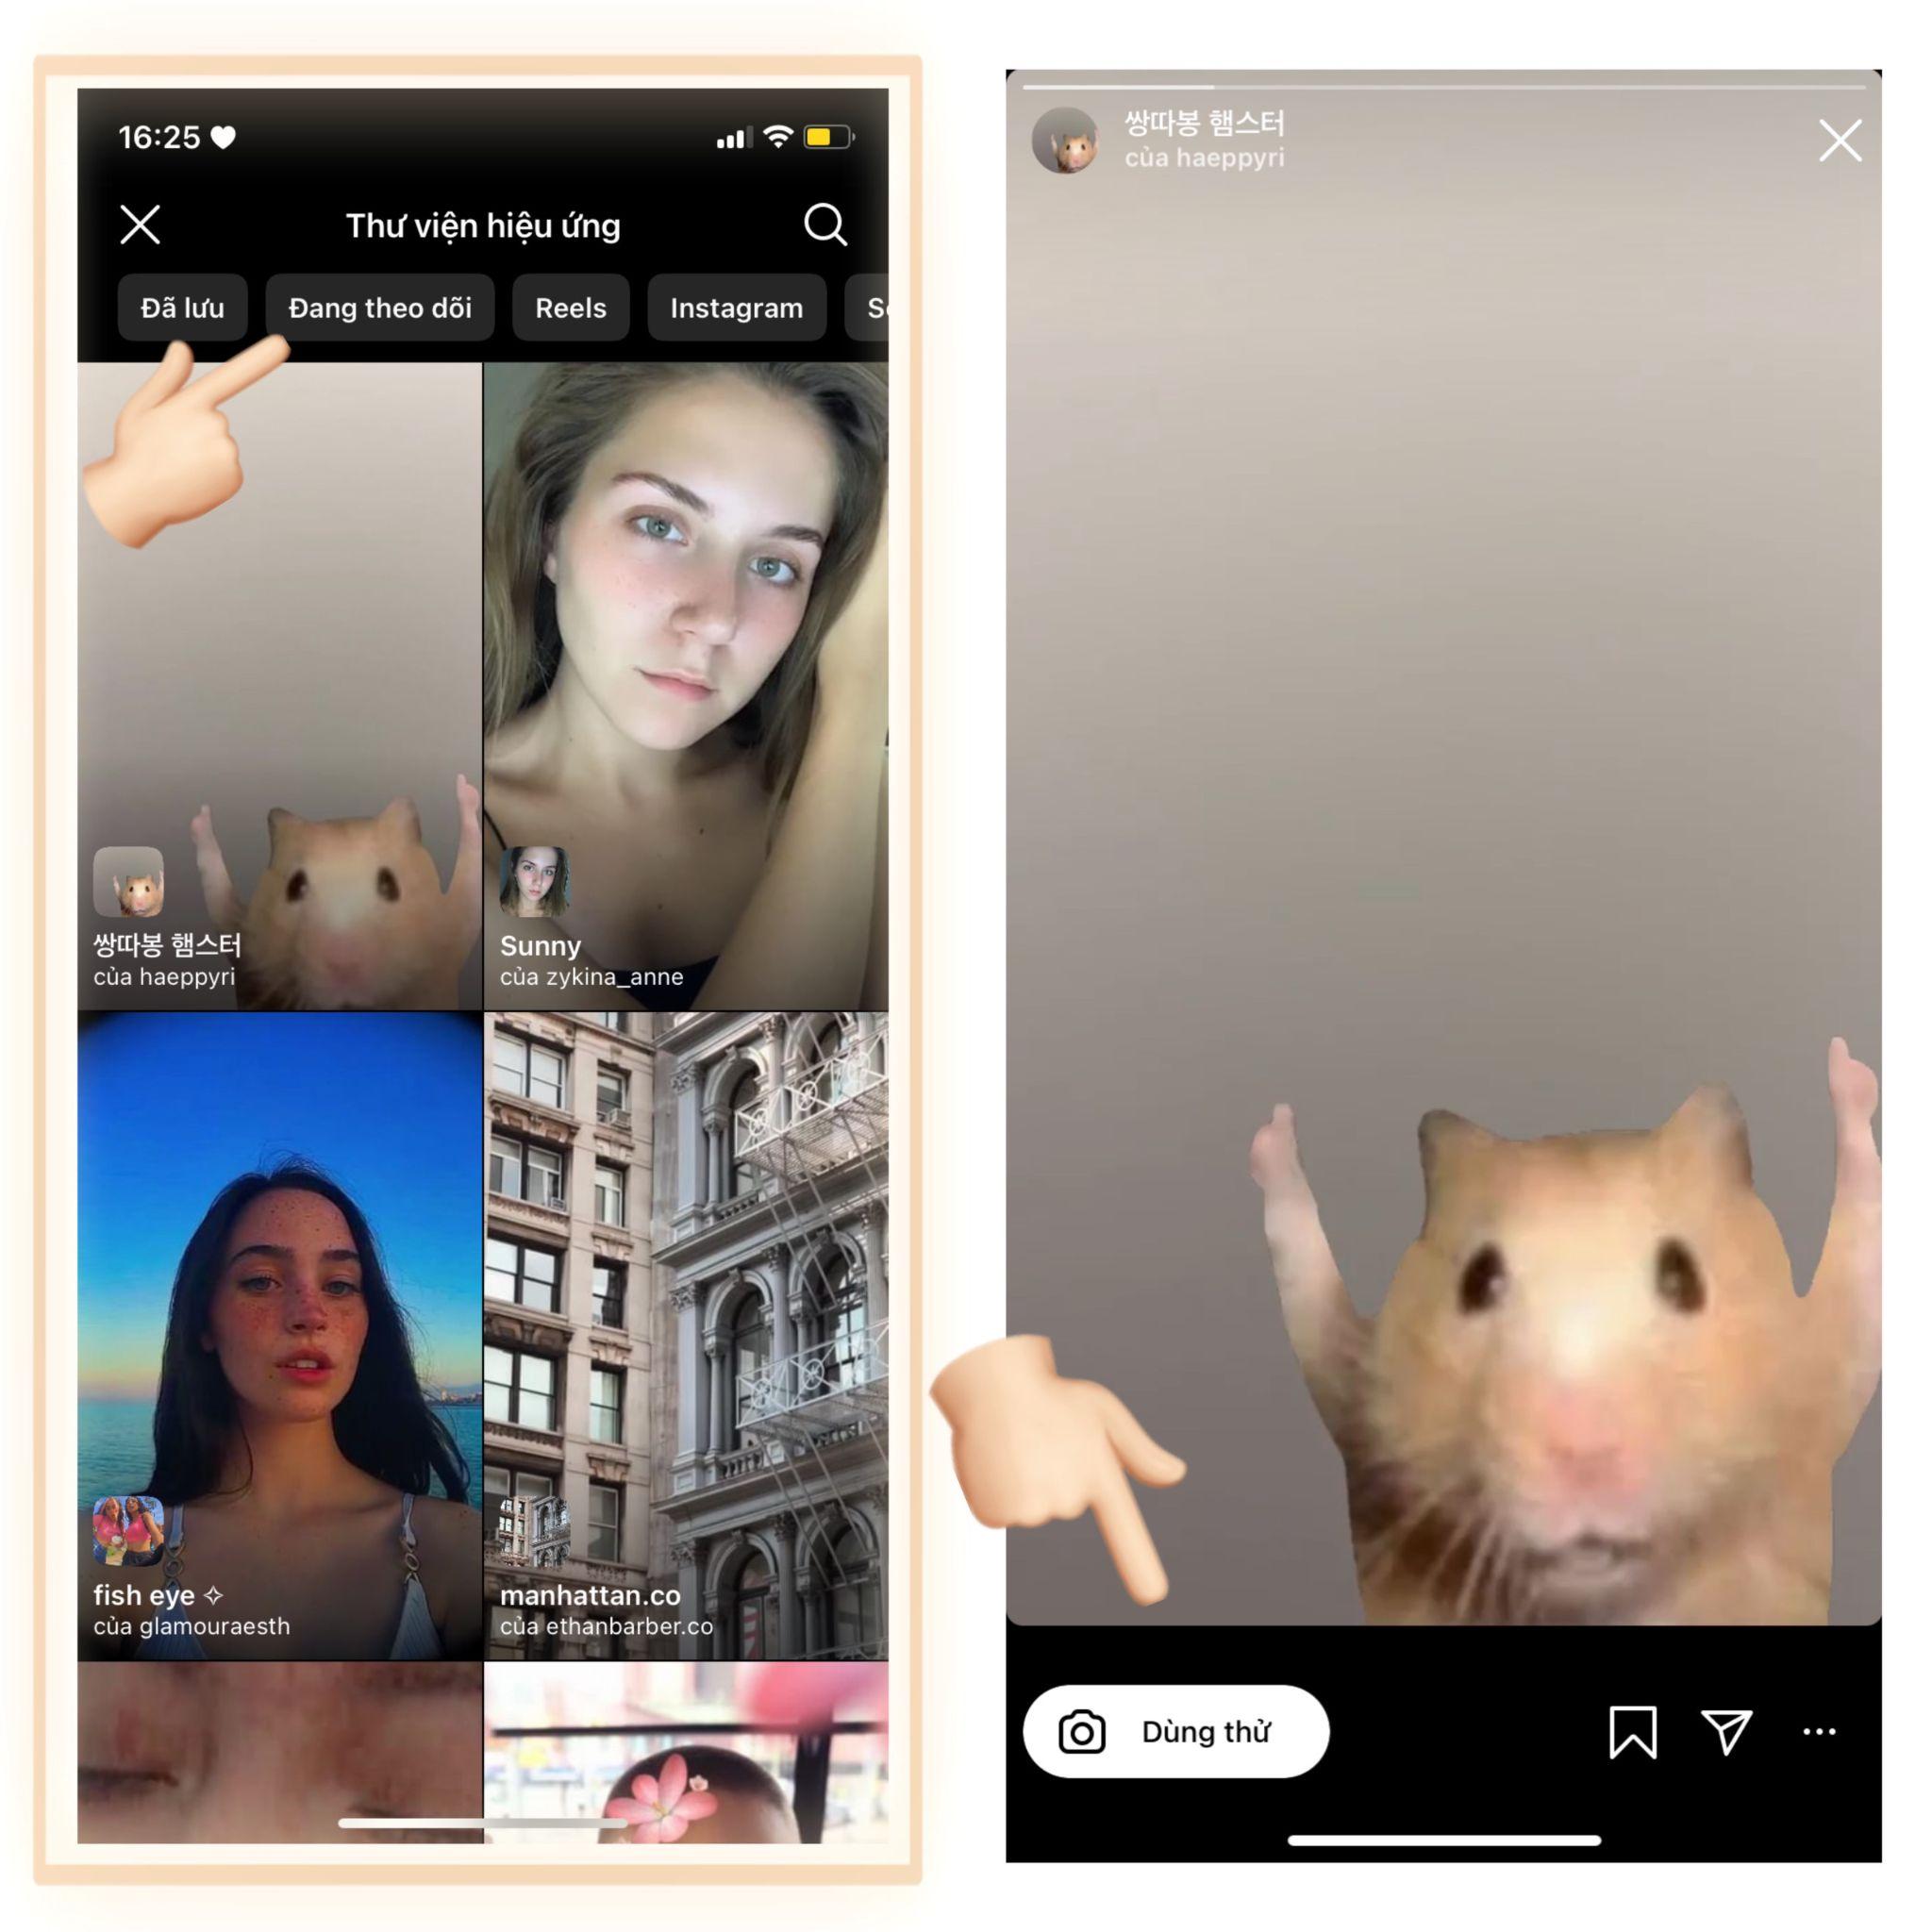 Bạn có thể nhấp vào filter và nhấn nút dùng thử để trải nghiệm chụp hình bằng instagram nhé